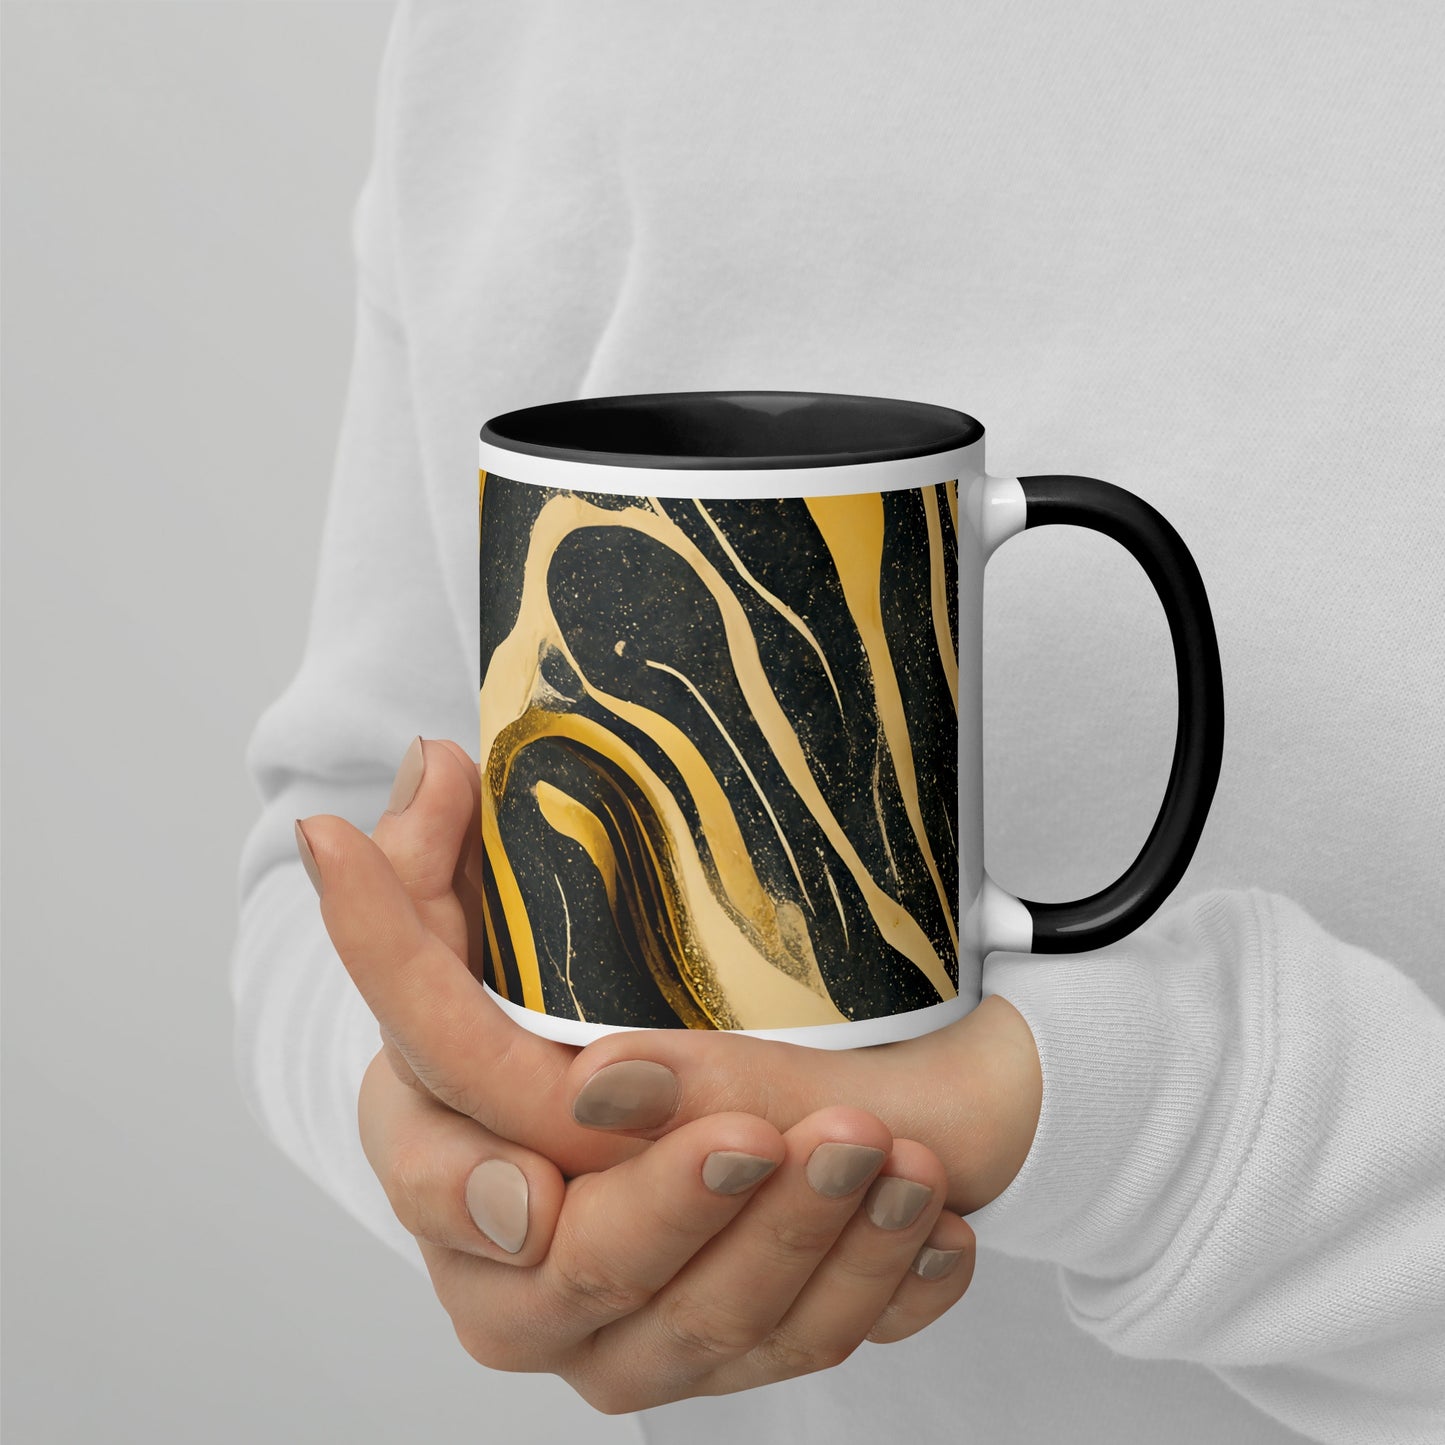 Duna Ceramic Mug with Color Inside